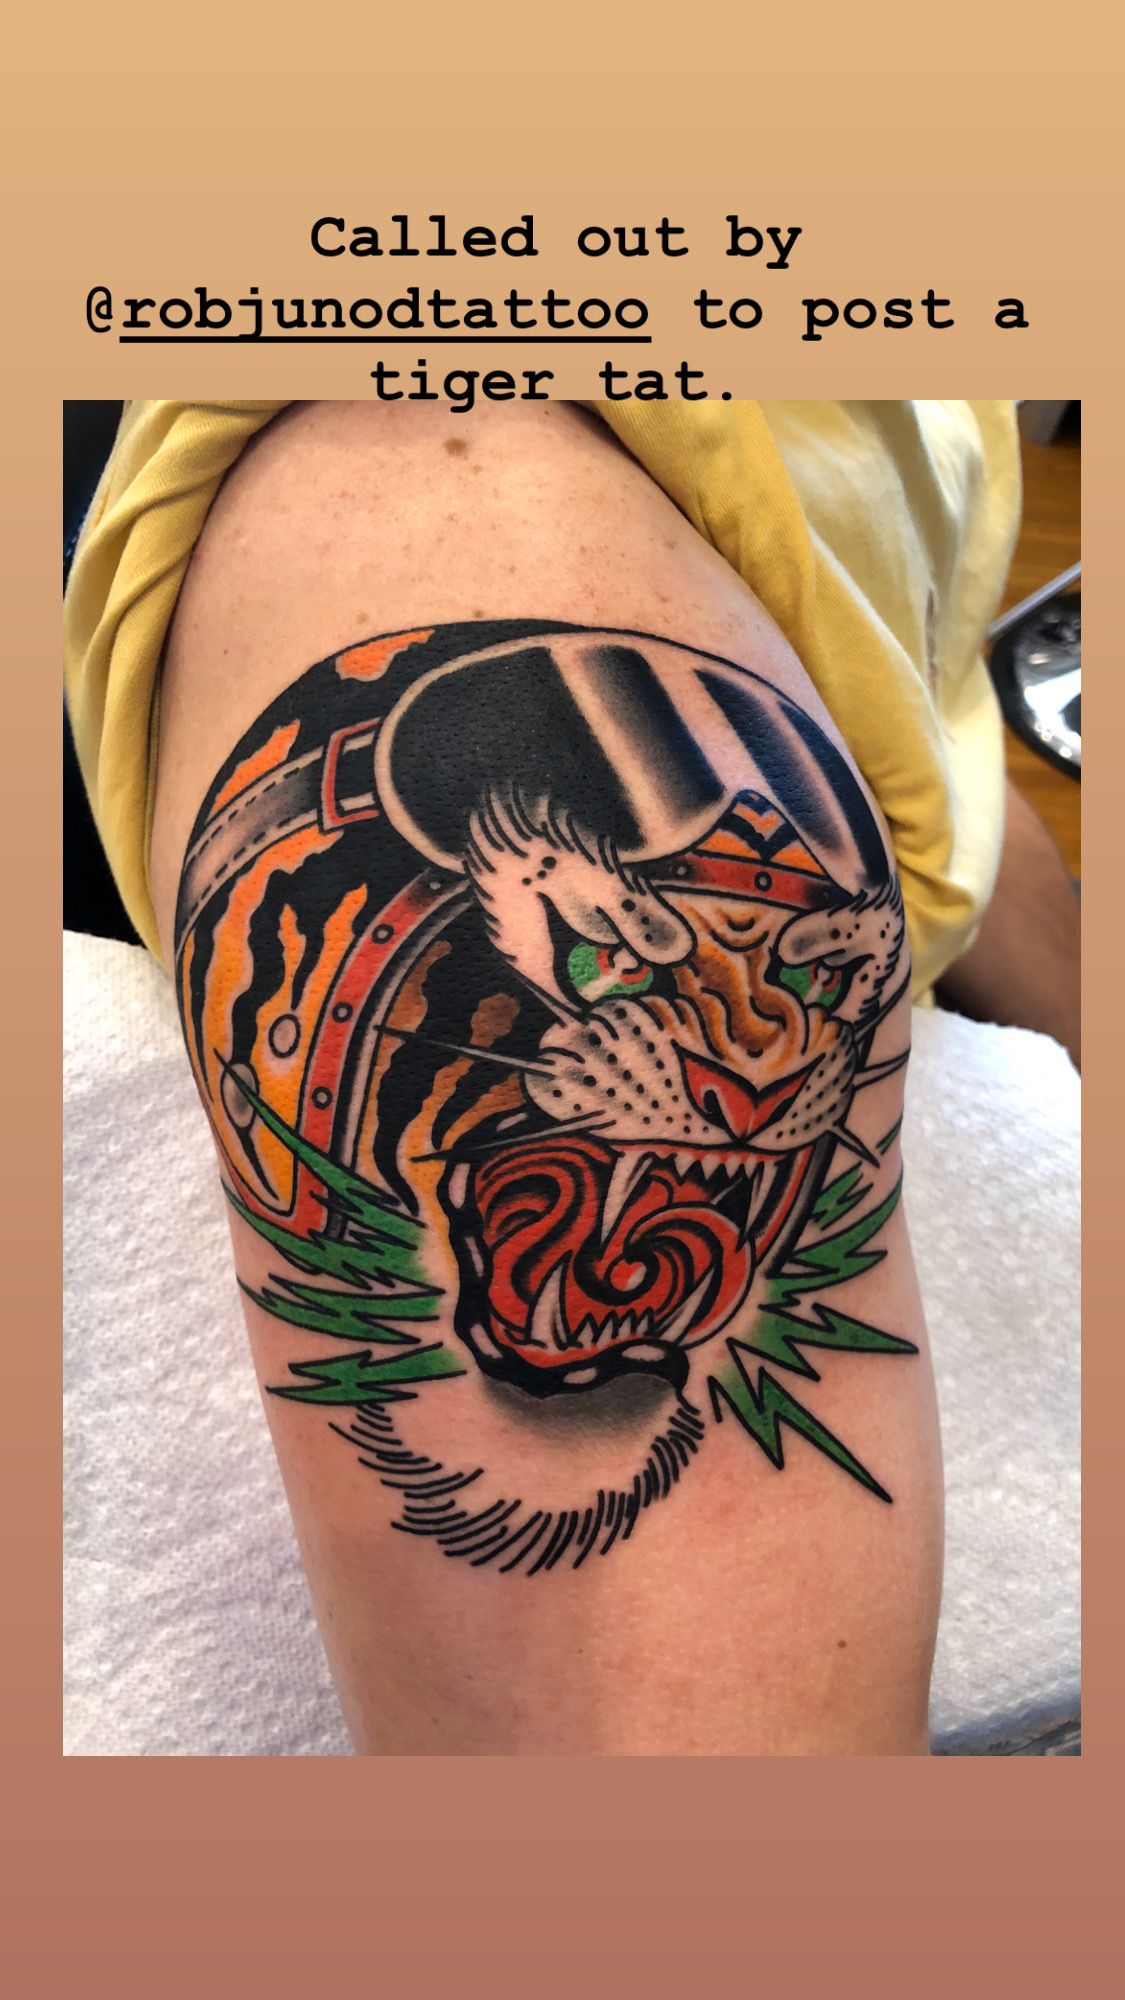 Hearts of fire tattoo • Tattoo Studio • Tattoodo